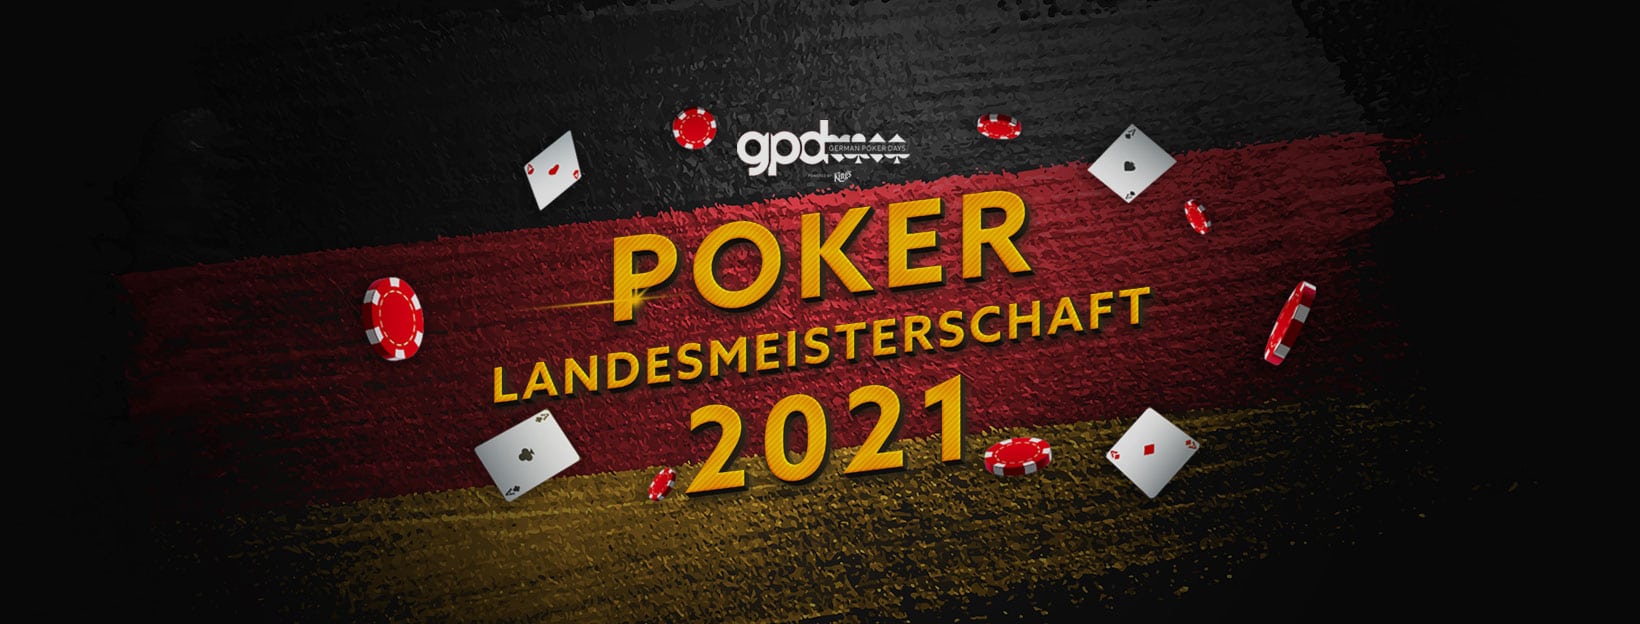 Poker Landesmeisterschaft 2021 Mecklenburg